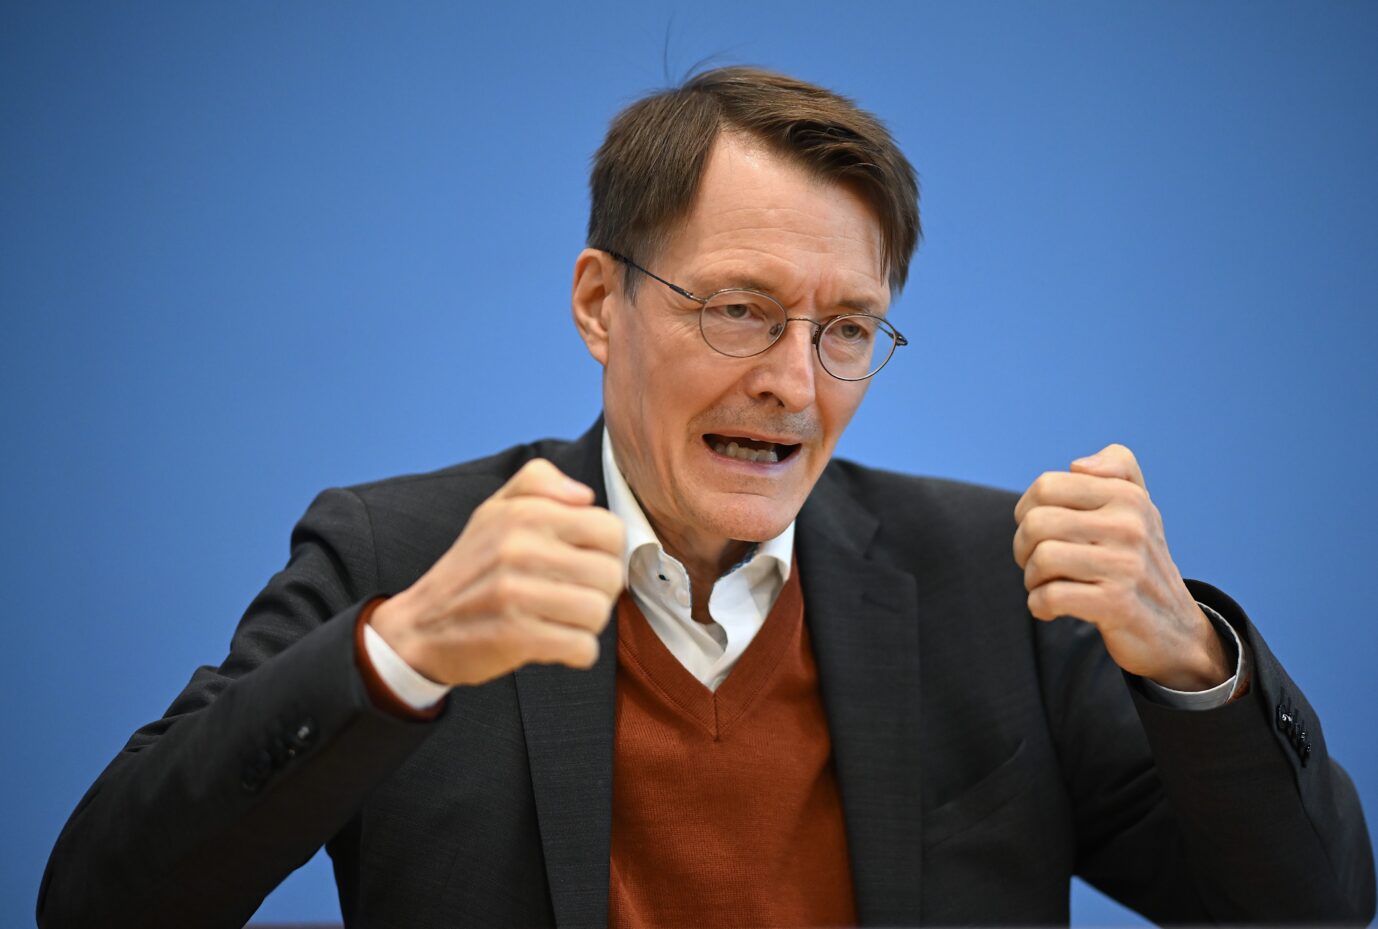 Gesundheitsminister Karl Lauterbach (SPD) startete neue Corona-Impfkampagne